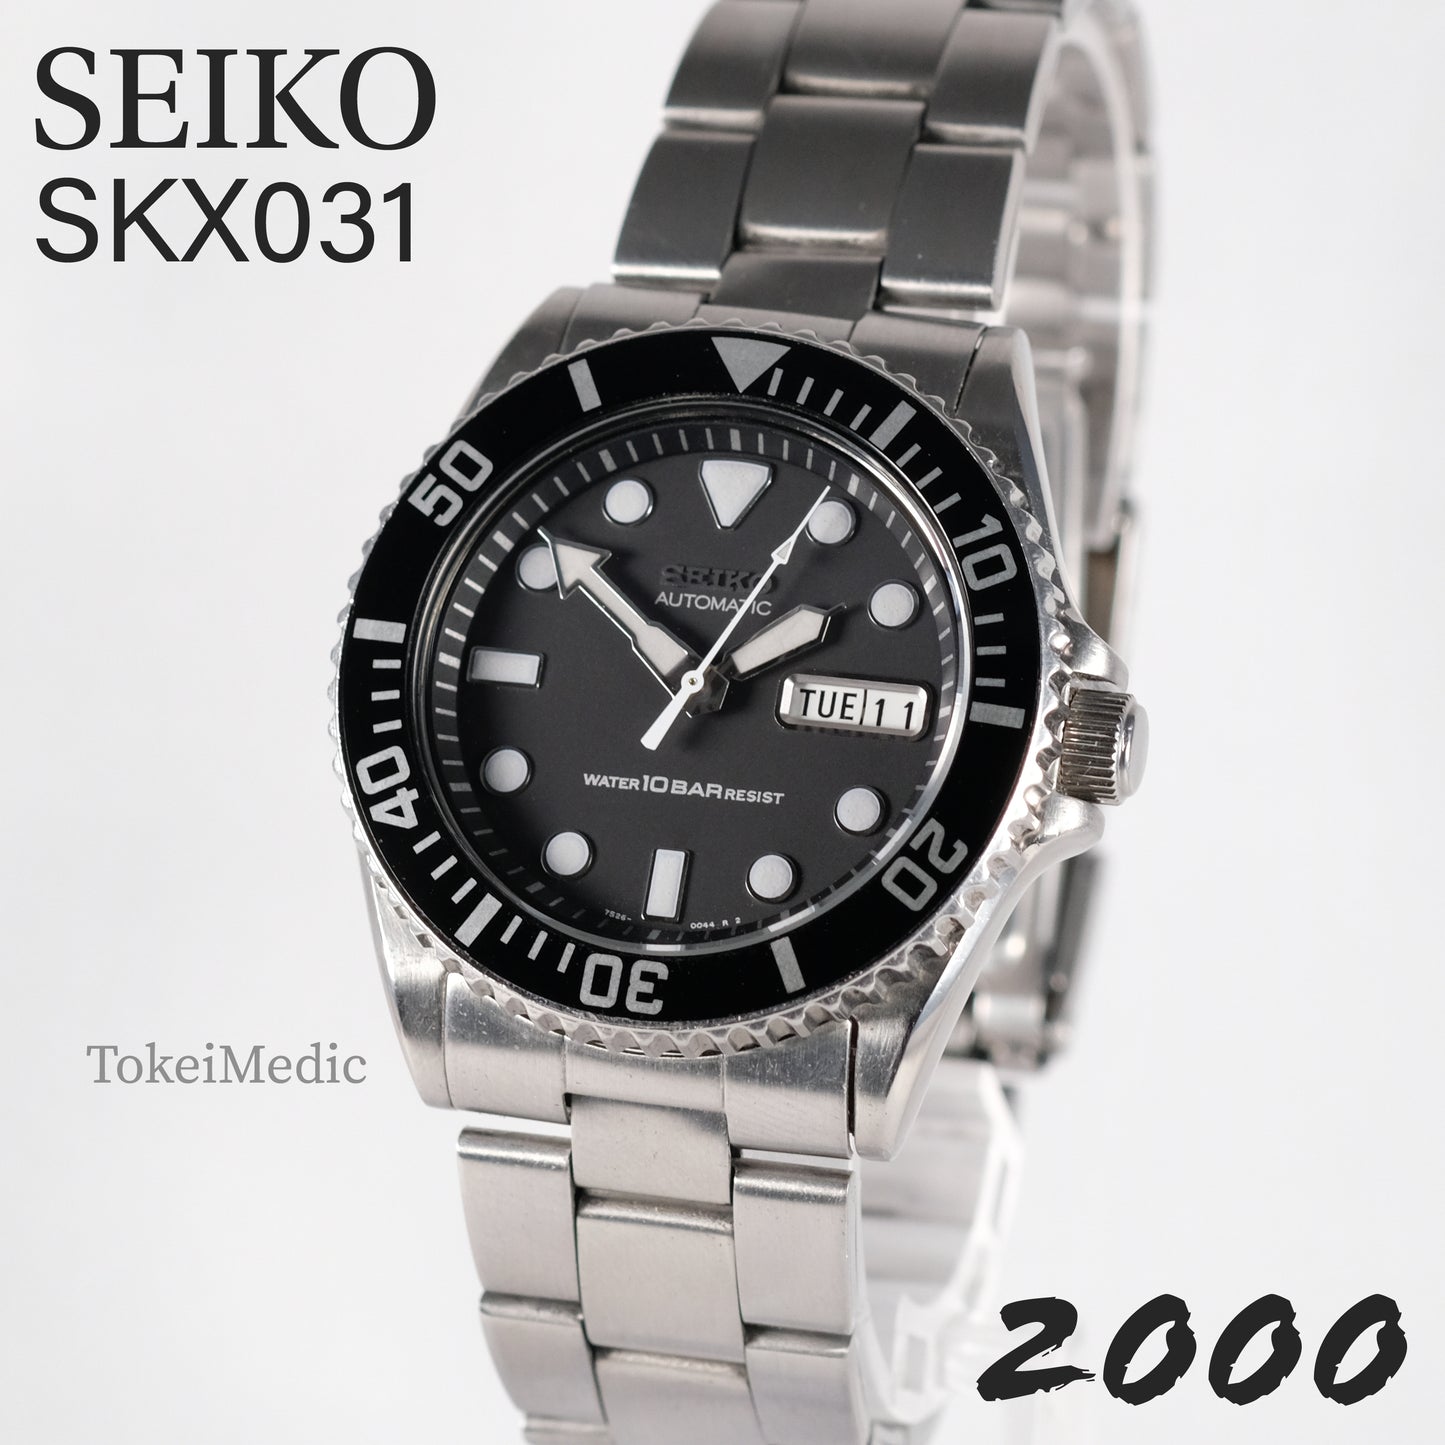 2000 Seiko SKX031 7S26-0040